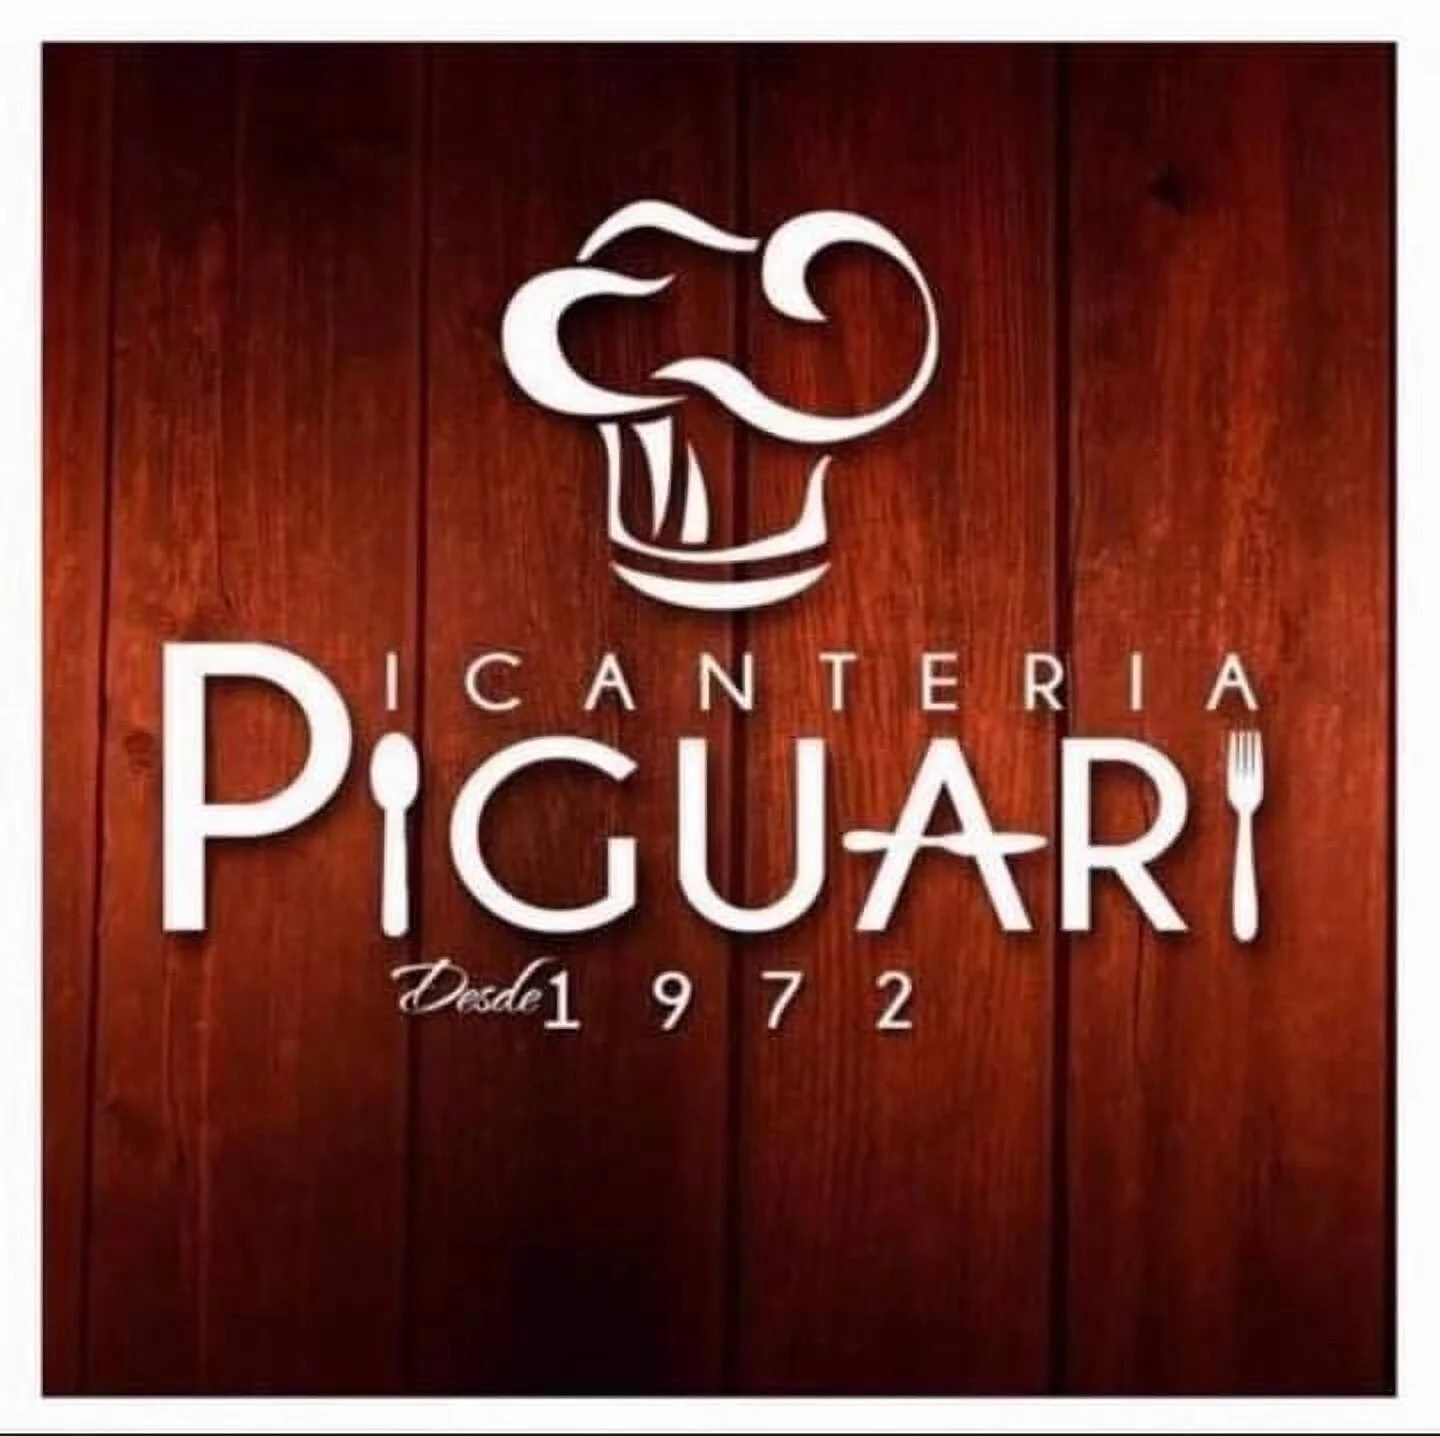 Restaurantes-restaurante-picanteria-piguari-19036